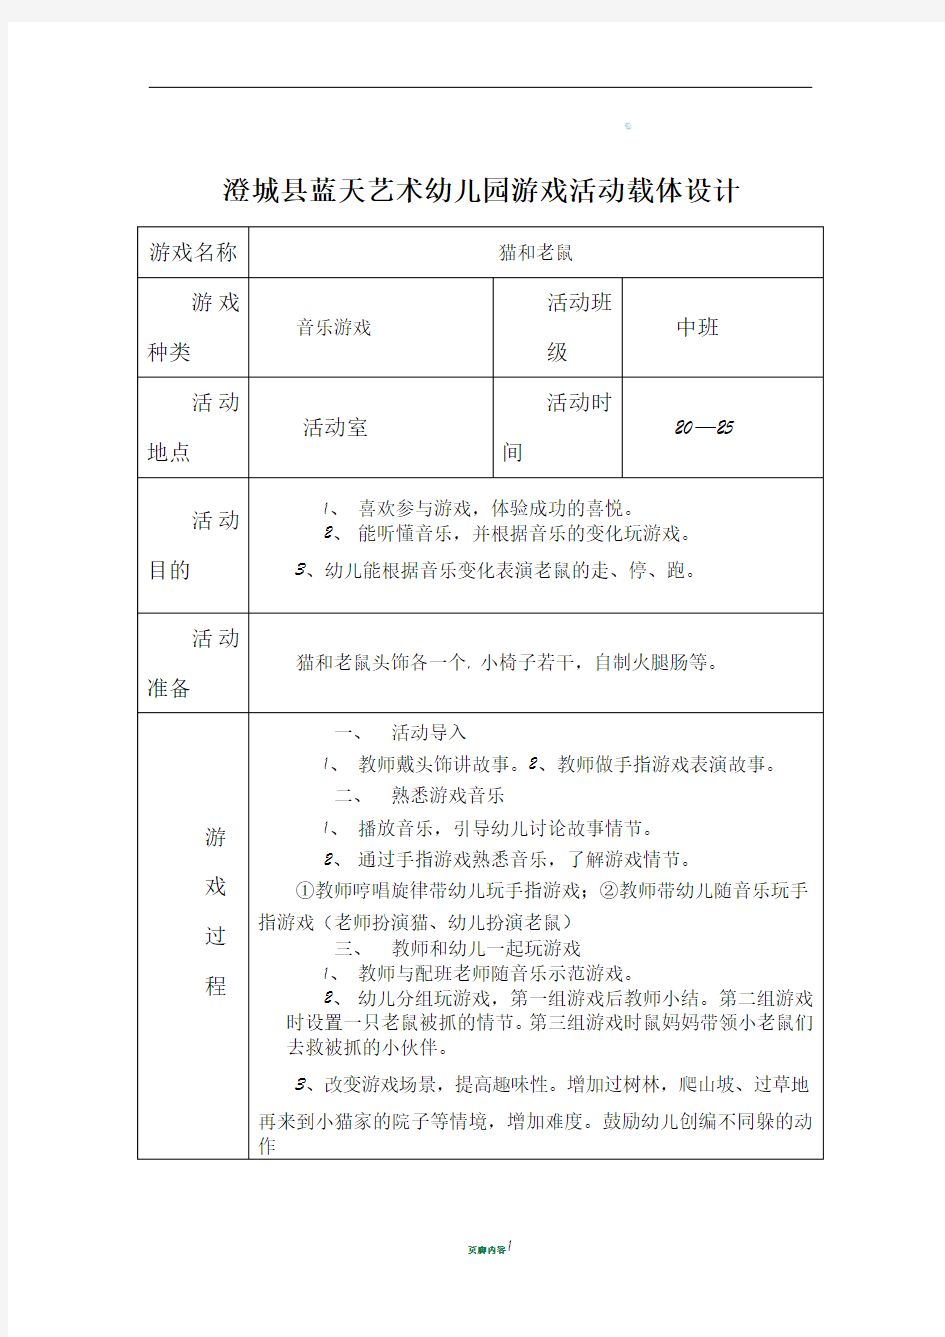 澄城县蓝天艺术幼儿园中班音乐游戏活动载体设计 (2)